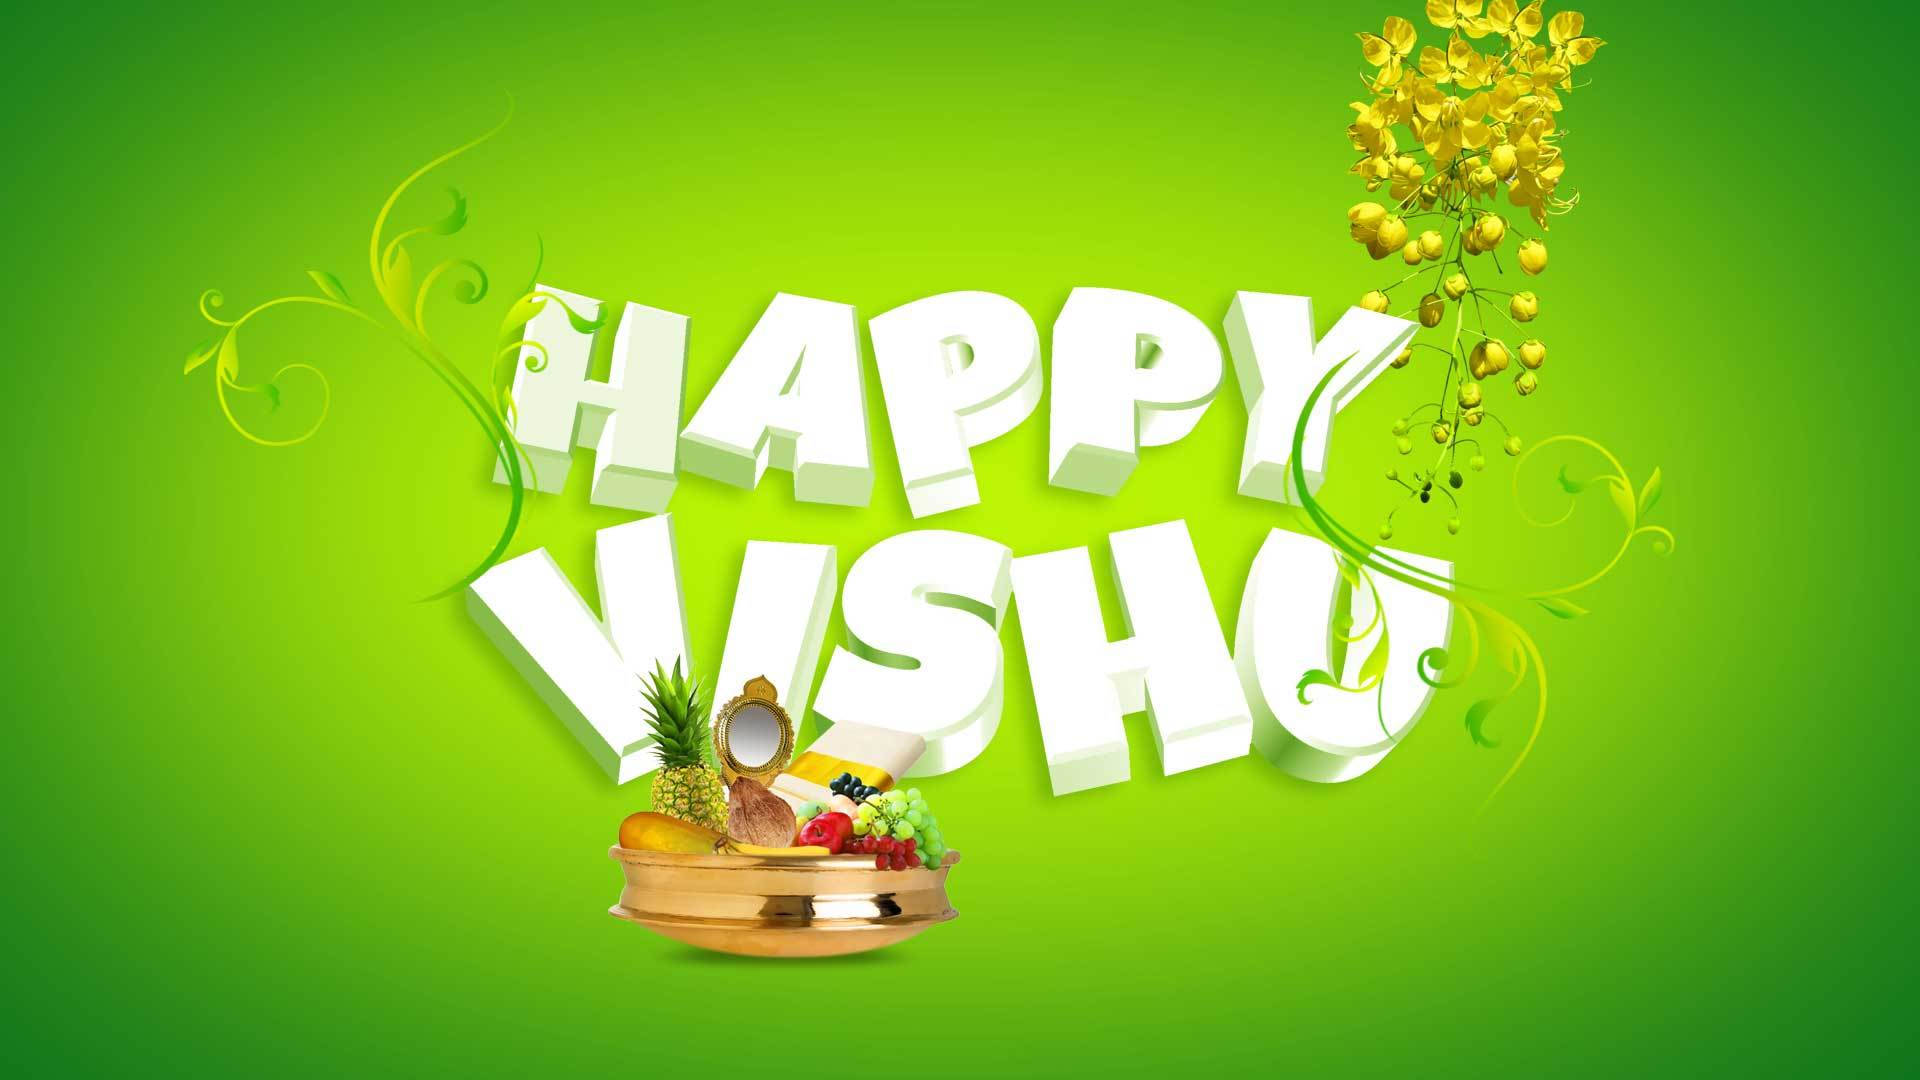 Green Happy Vishu Wallpaper